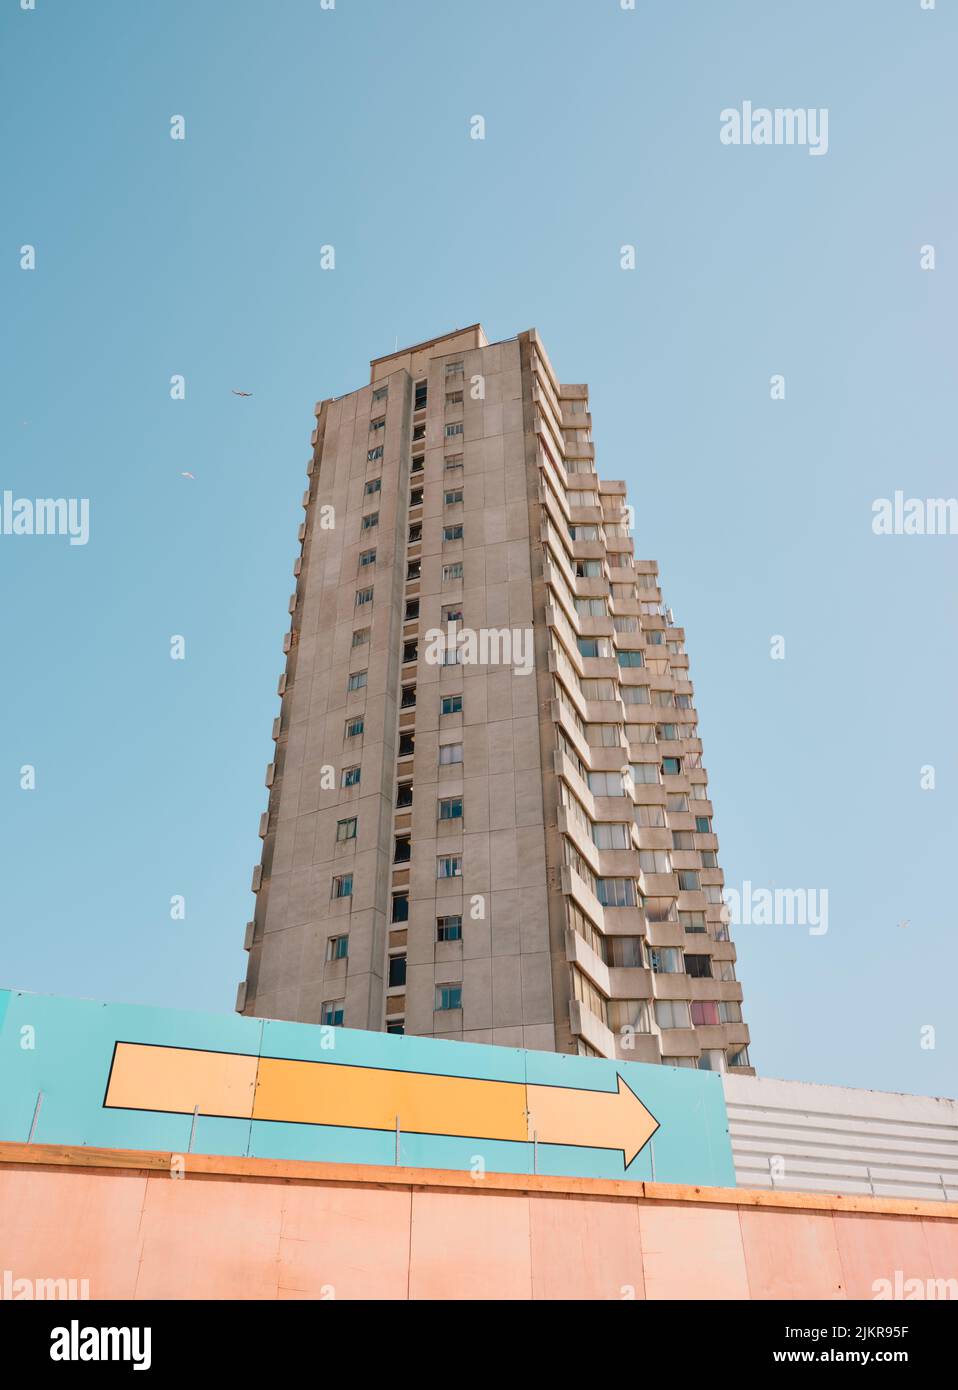 Arlington House torre bloque de apartamentos residenciales de 58 metros de altura y 18 pisos, Margate Kent, Inglaterra, Reino Unido. Arquitectura brutalista construida en 1964 Foto de stock